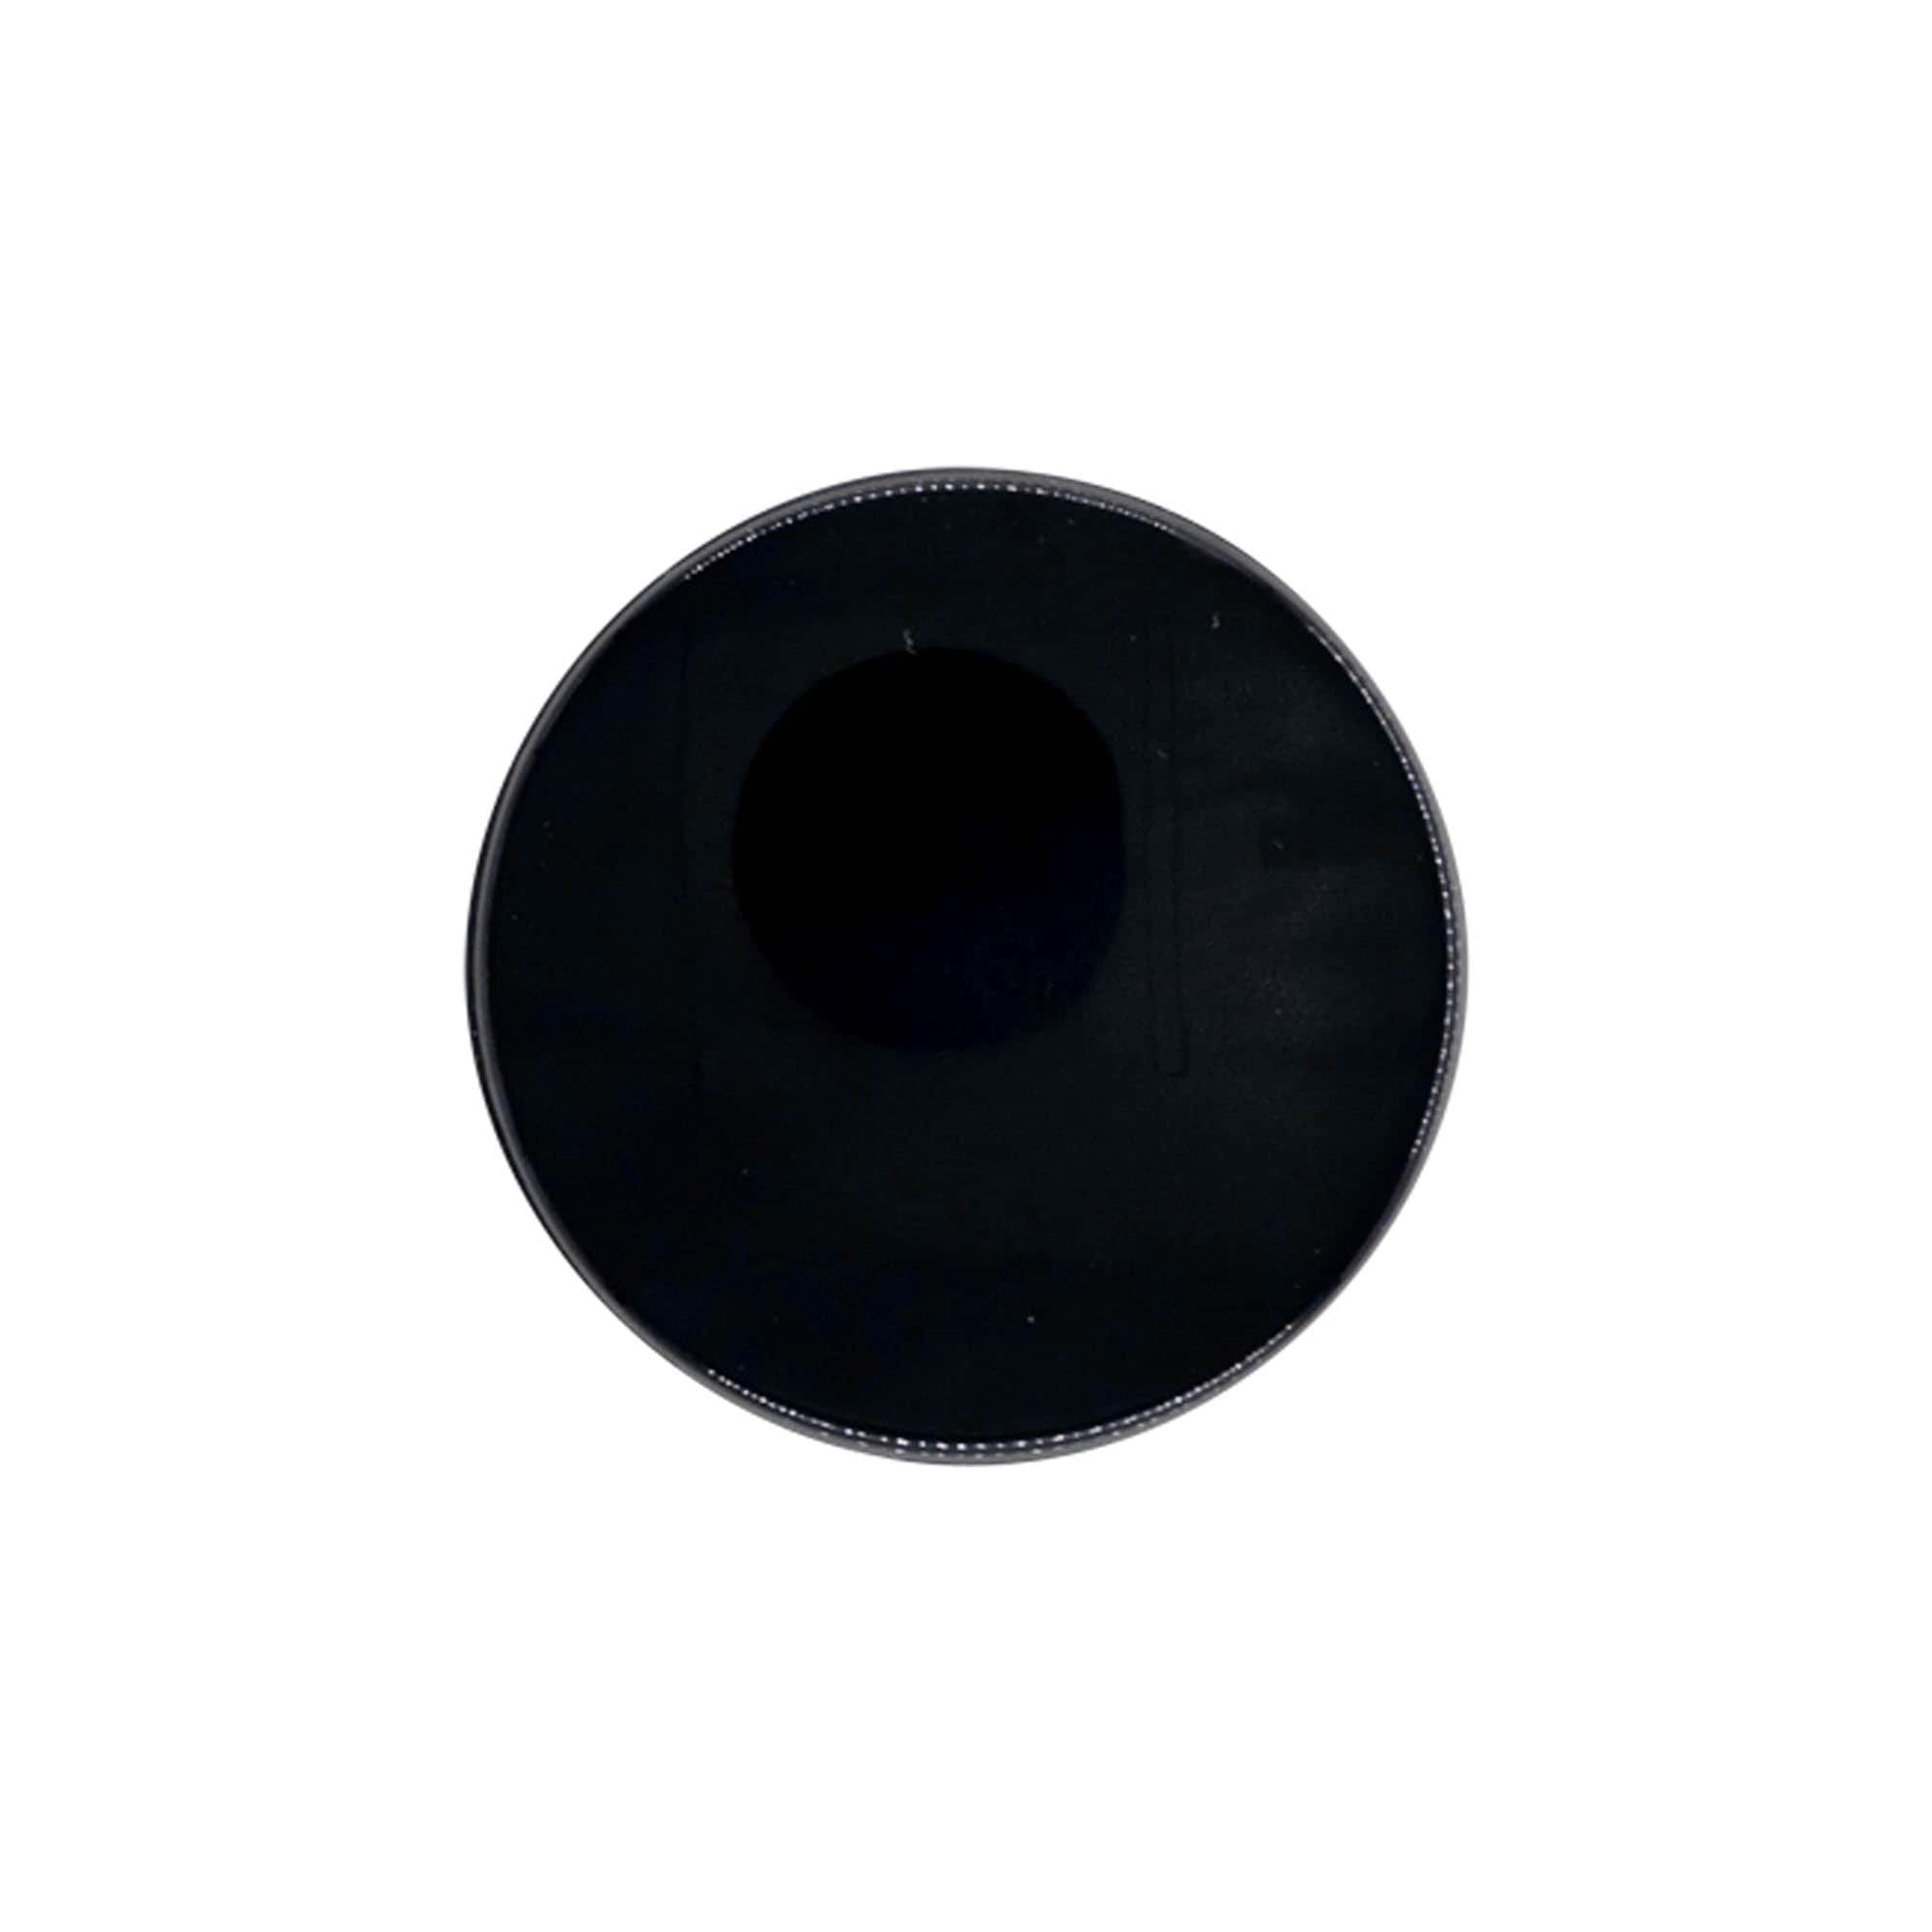 Zakrętka słoiczka na przyprawy do młynka, tworzywo sztuczne PP, kolor czarny, do zamknięcia: GPI 38/400